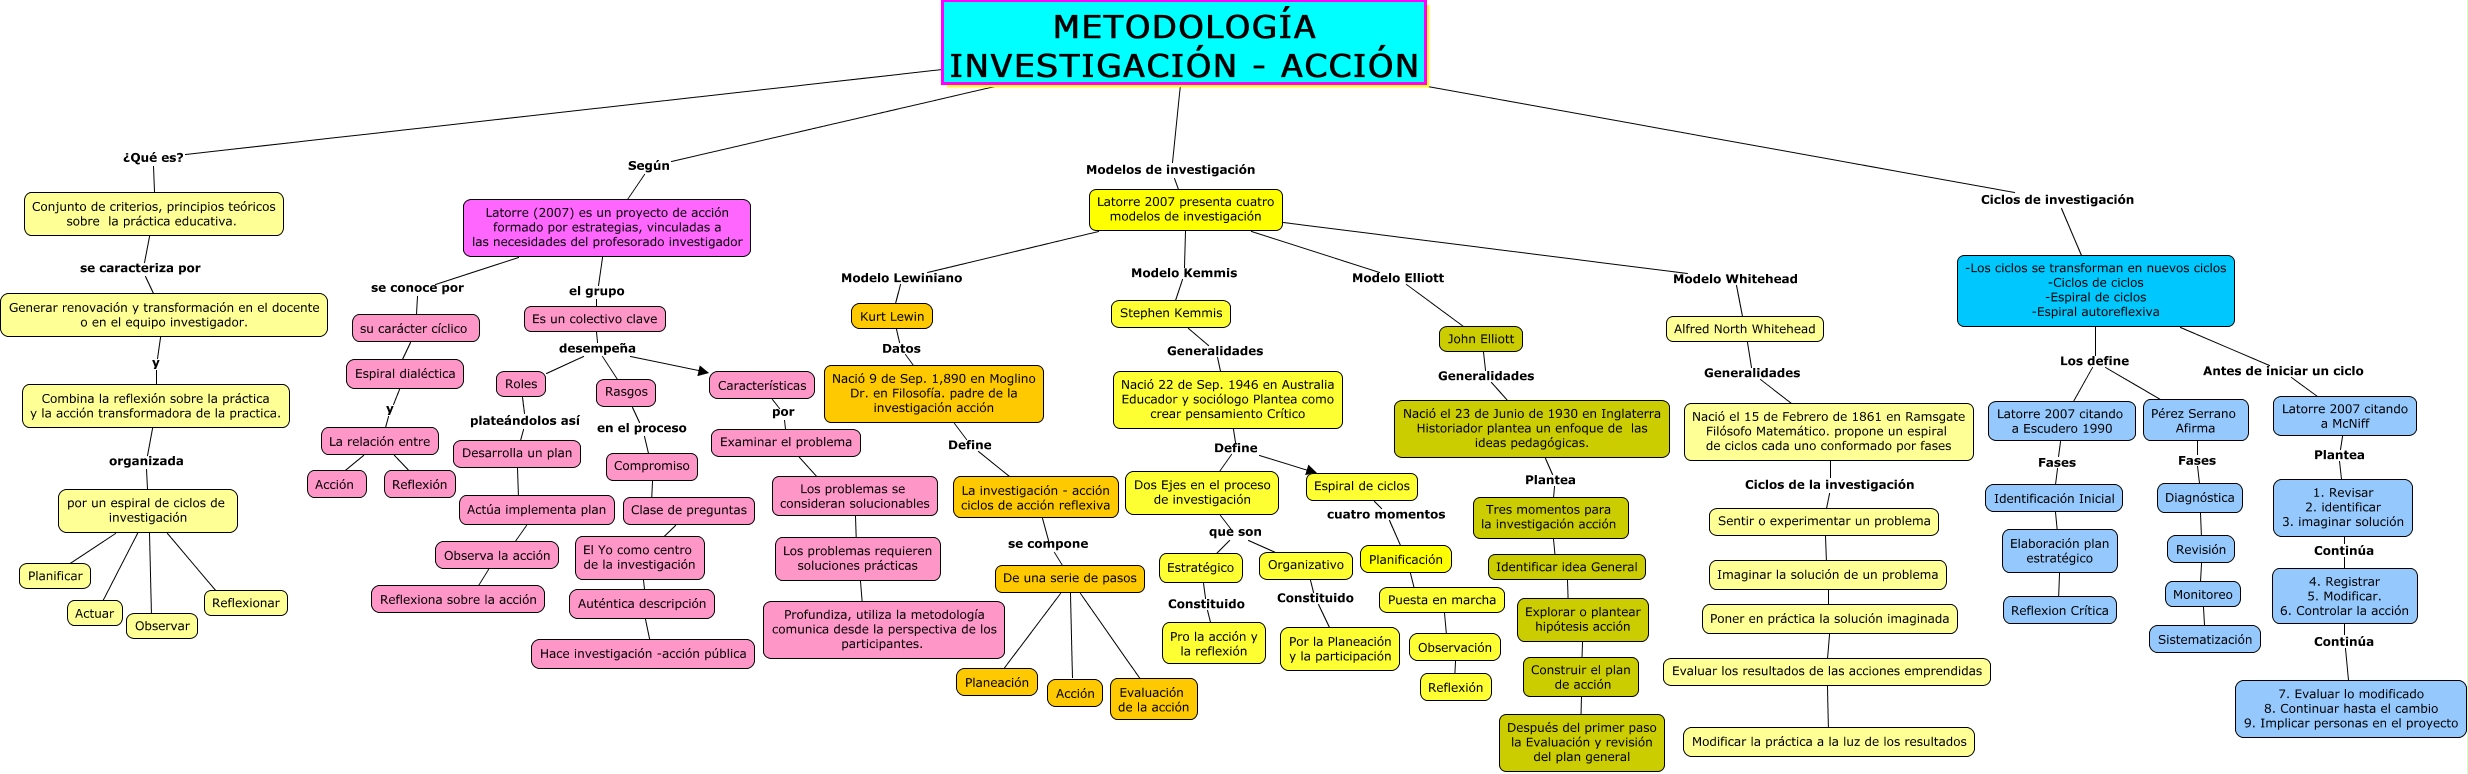 Mapa Conceptual del proceso, modelos y ciclos de la investigación - acción  - Investigación